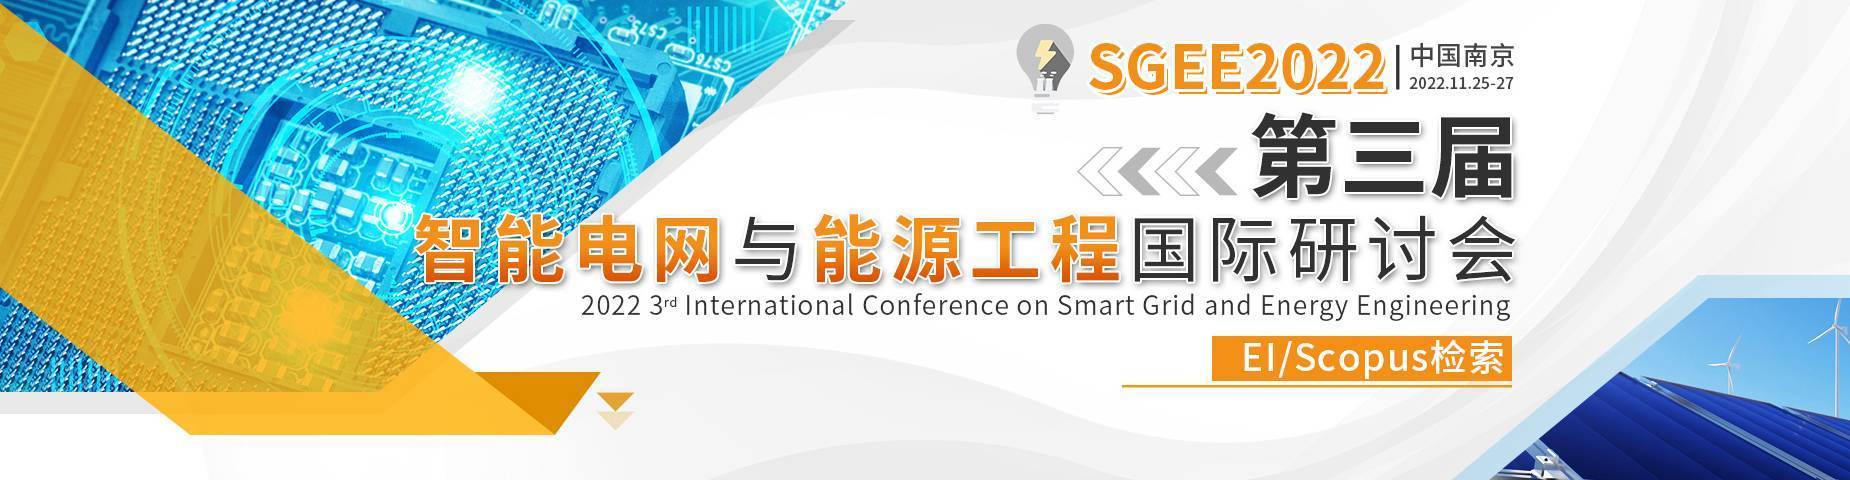 第三届智能电网与能源工程国际研讨会(SGEE2022)